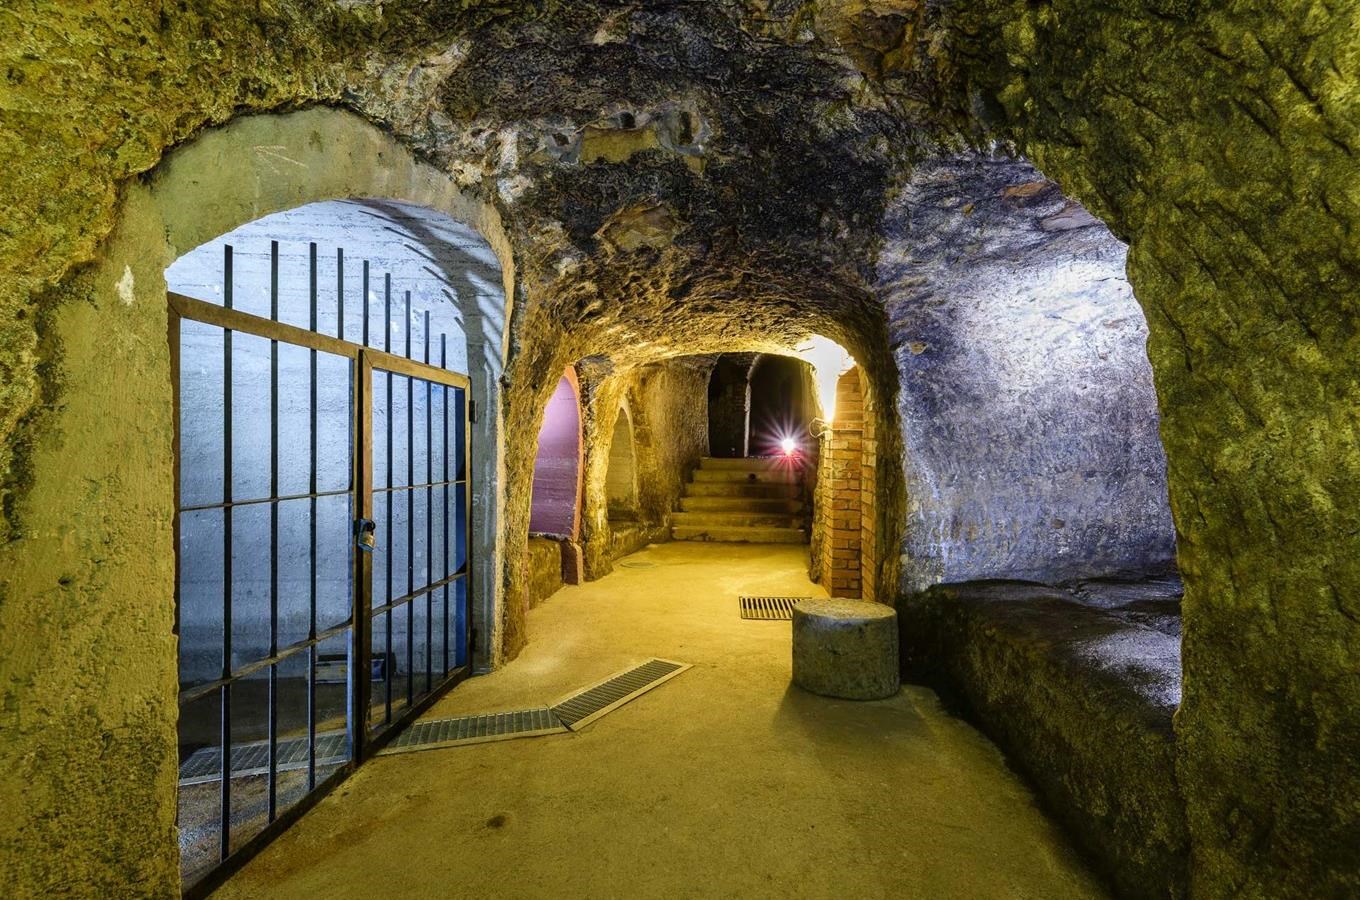 Plzeňské historické podzemí za svitu baterek